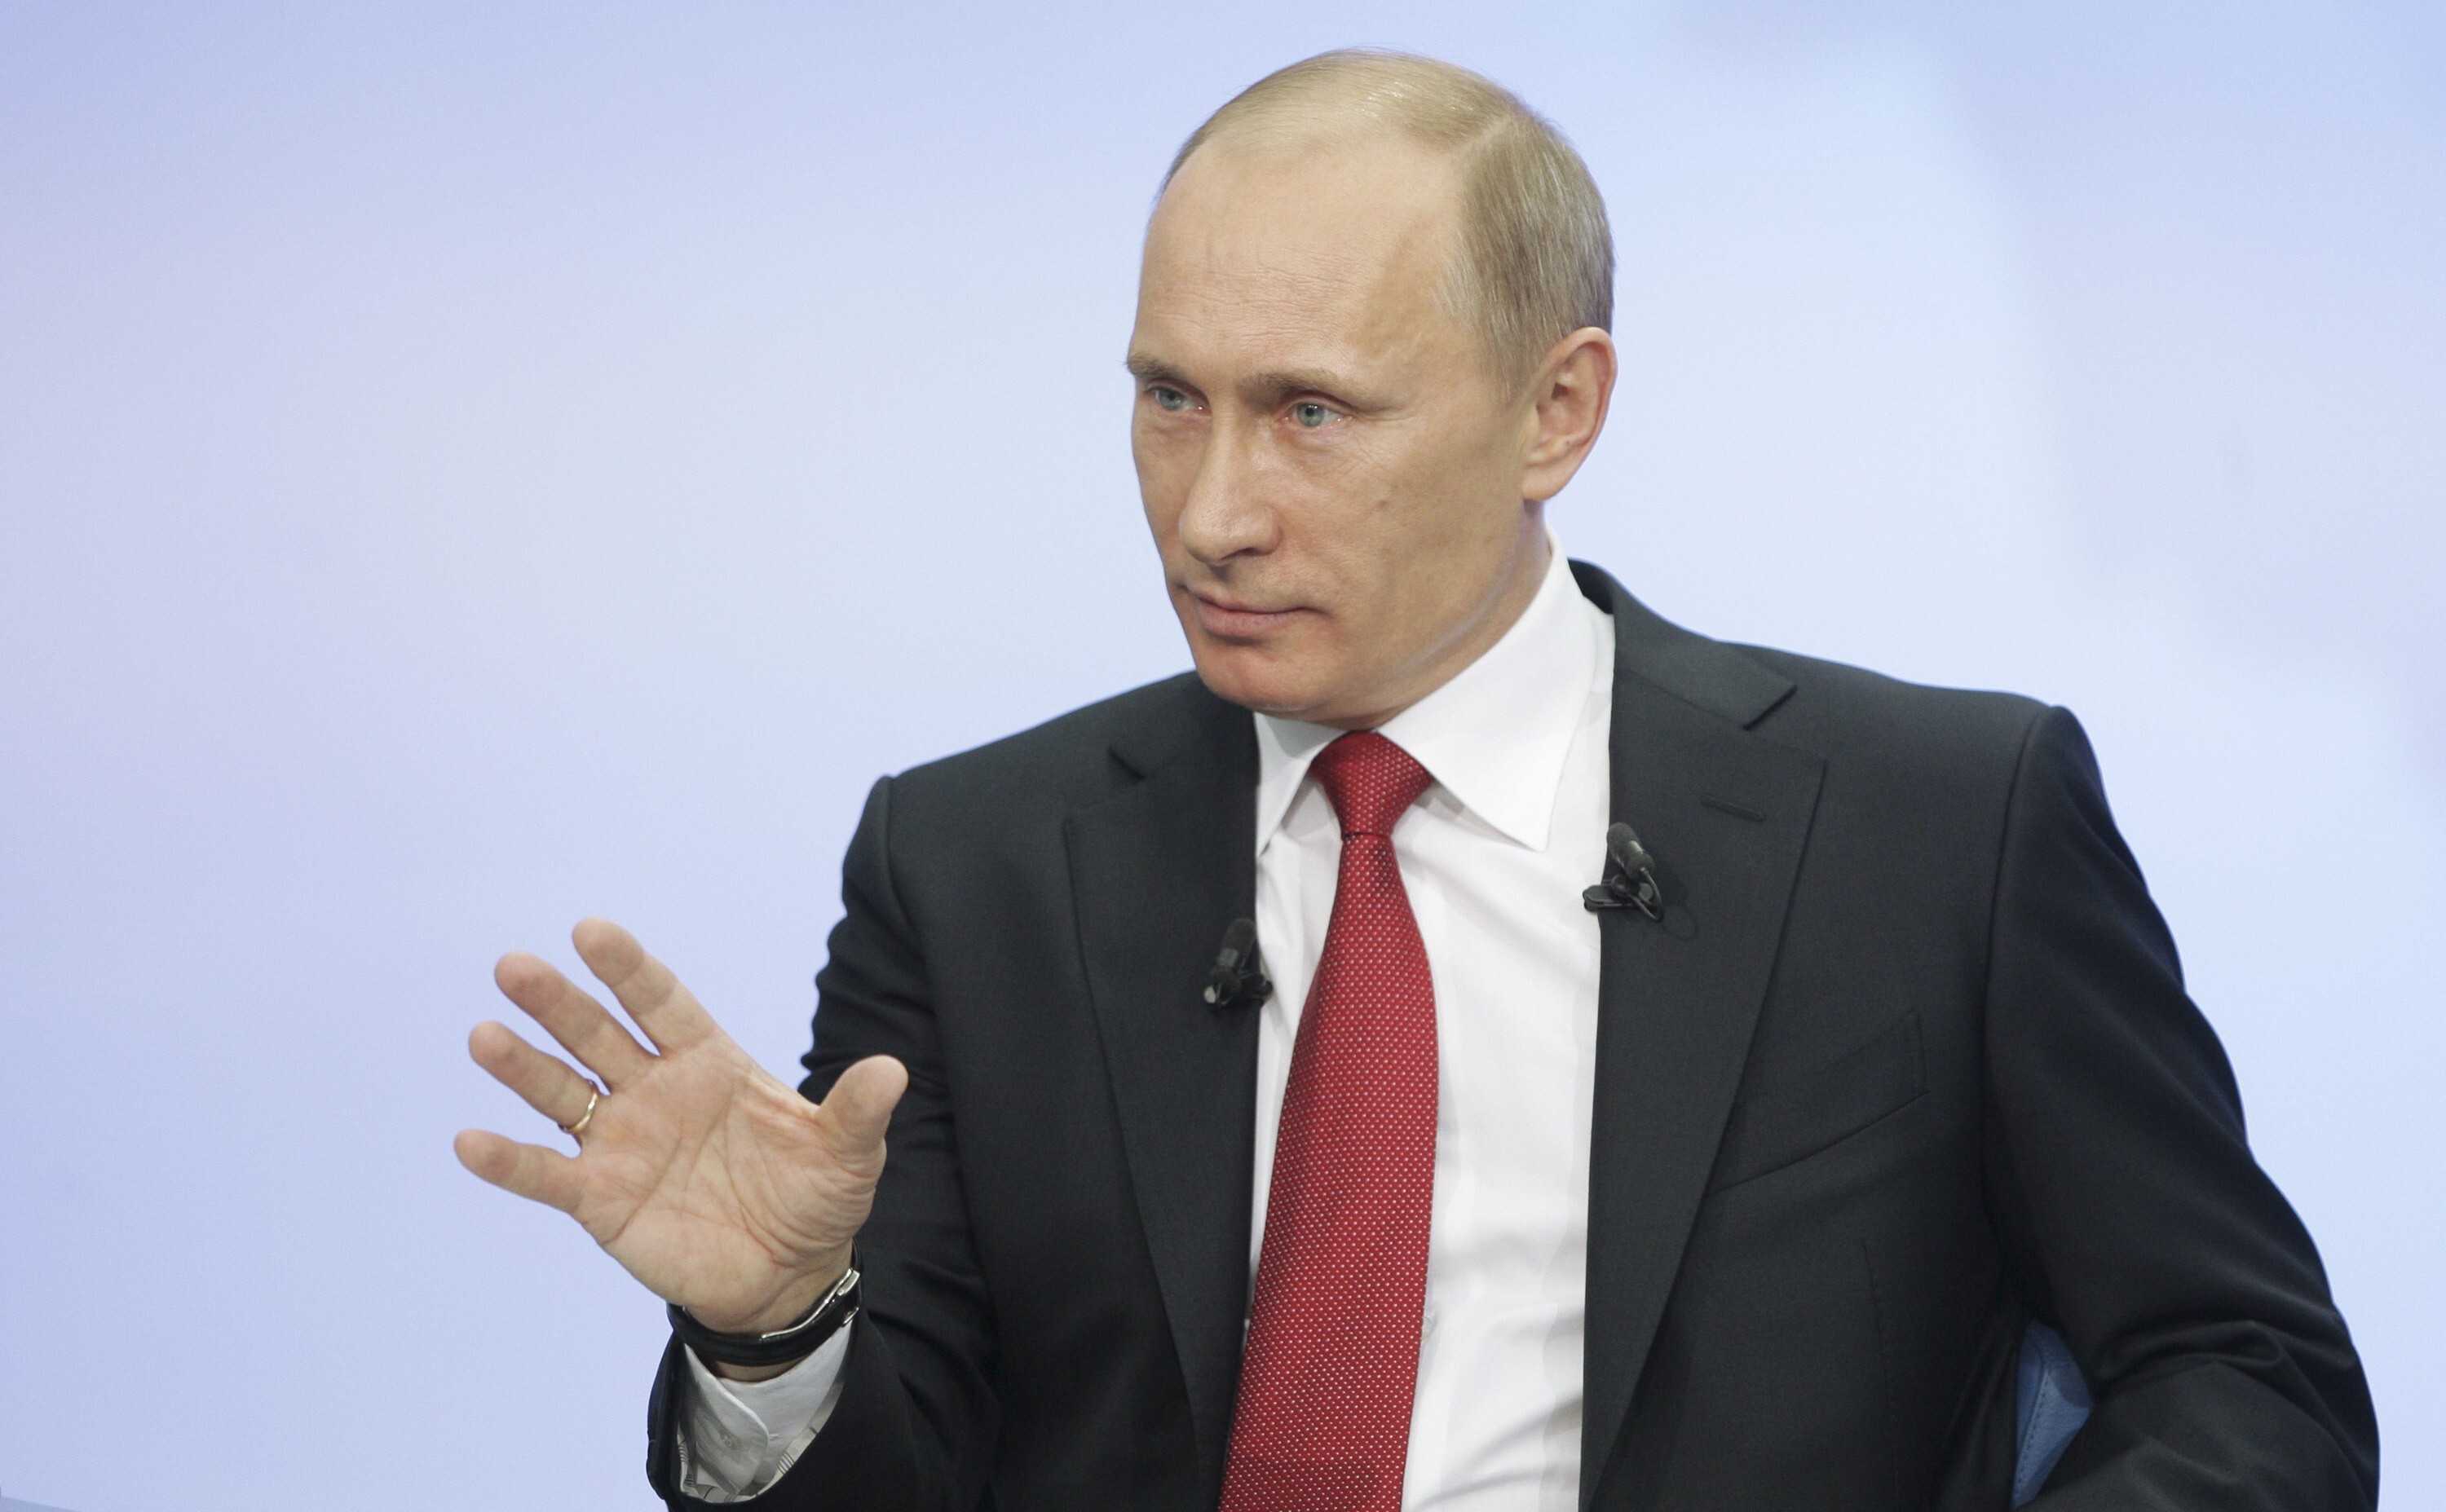 Путин : "Мы будем развивать ударные [ядерные] системы" 